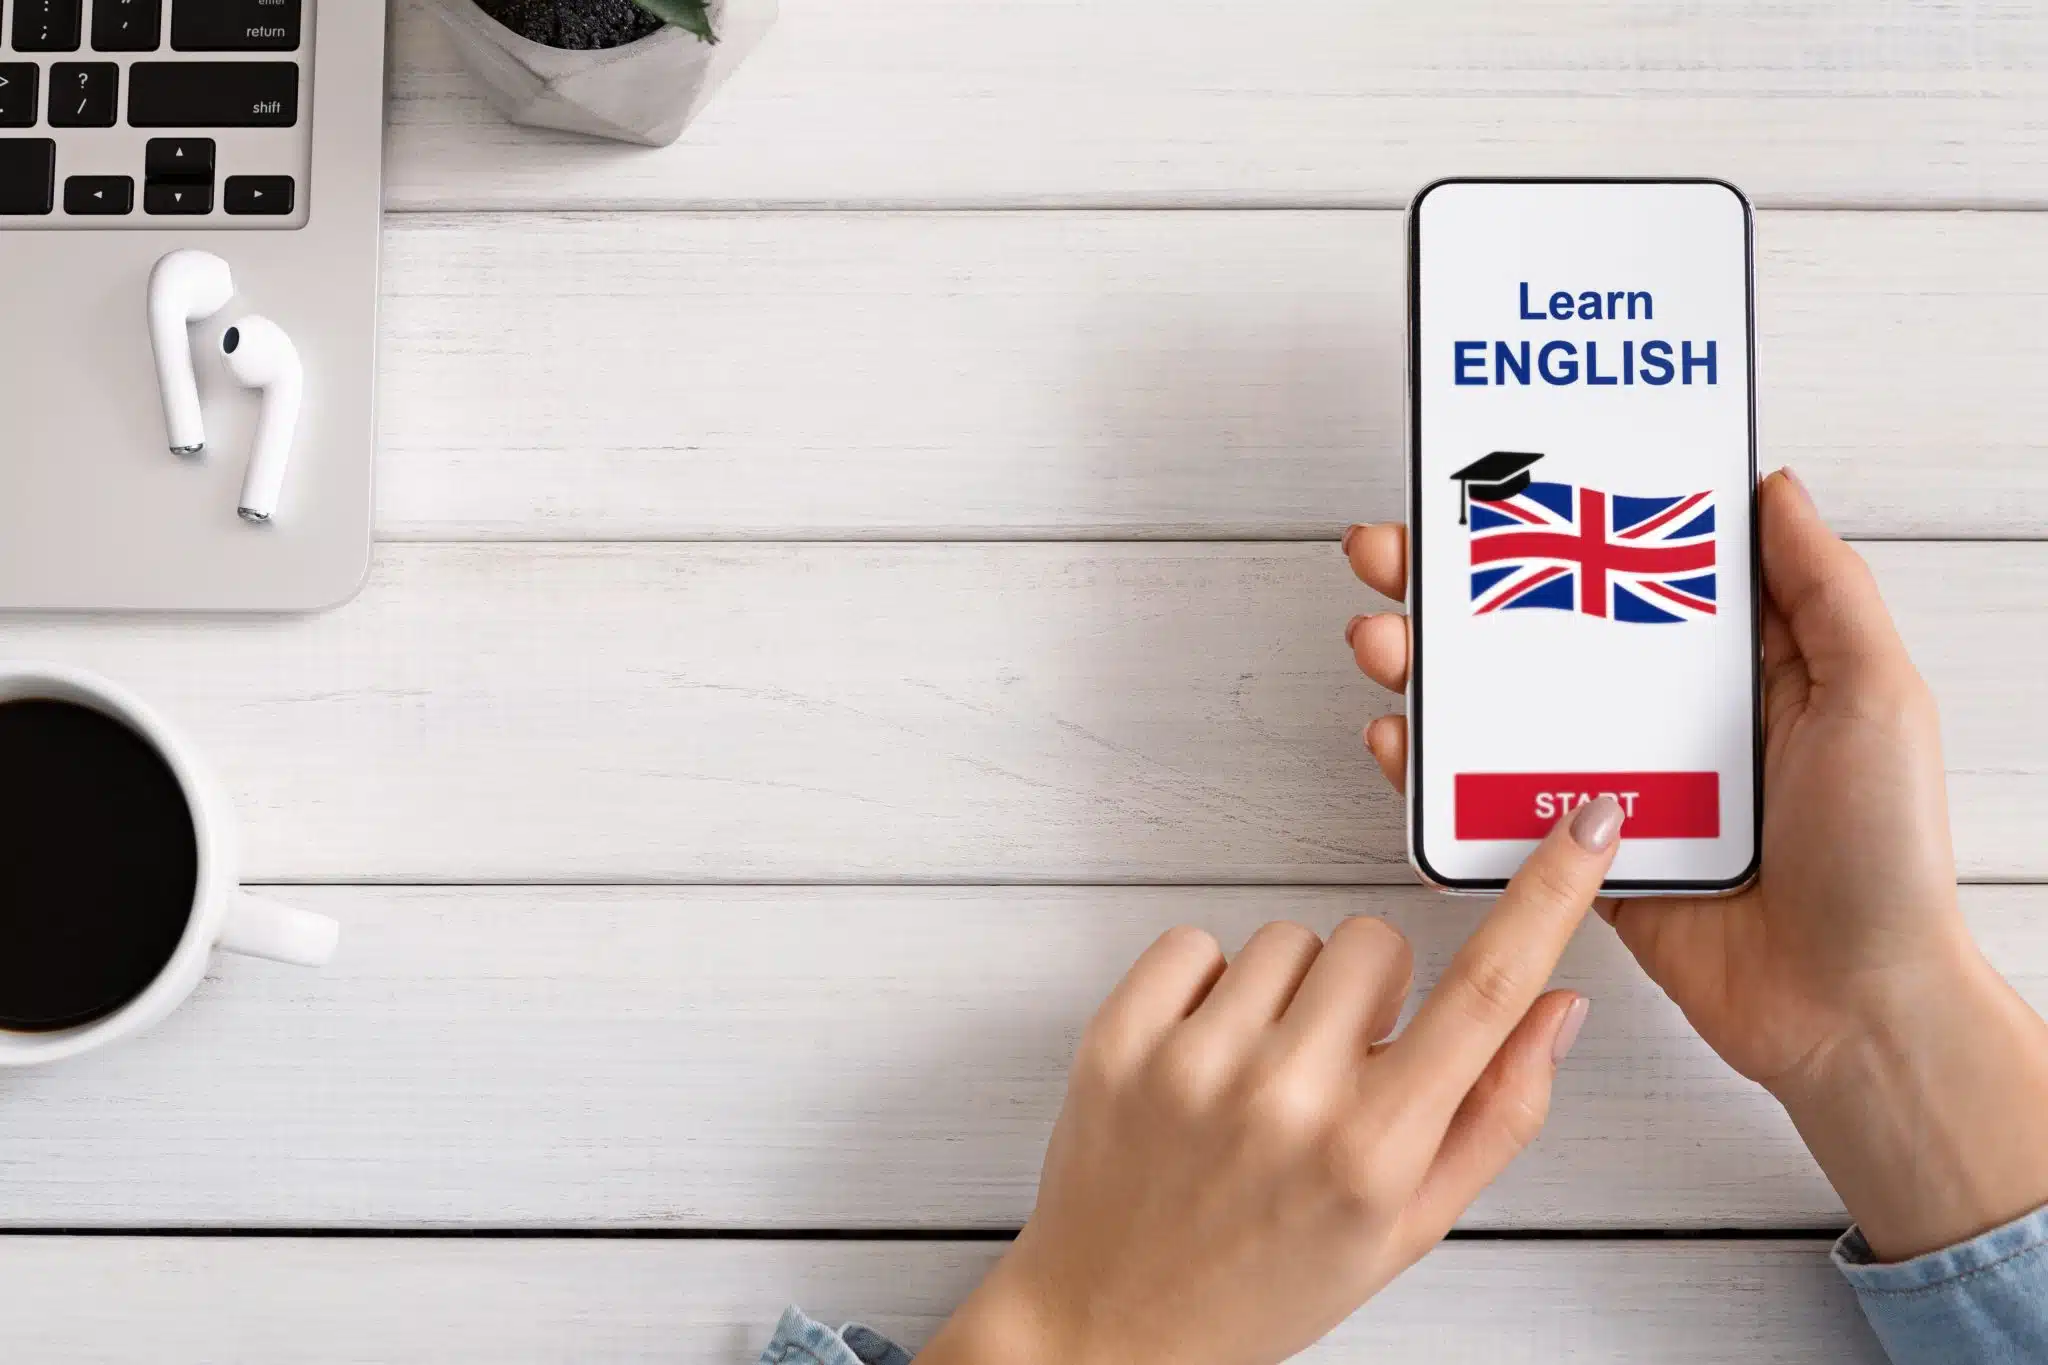 Ecran de téléphone mobile sur le quel un drapeau anglais est représenté en vue d'apprendre l'anglais à distance